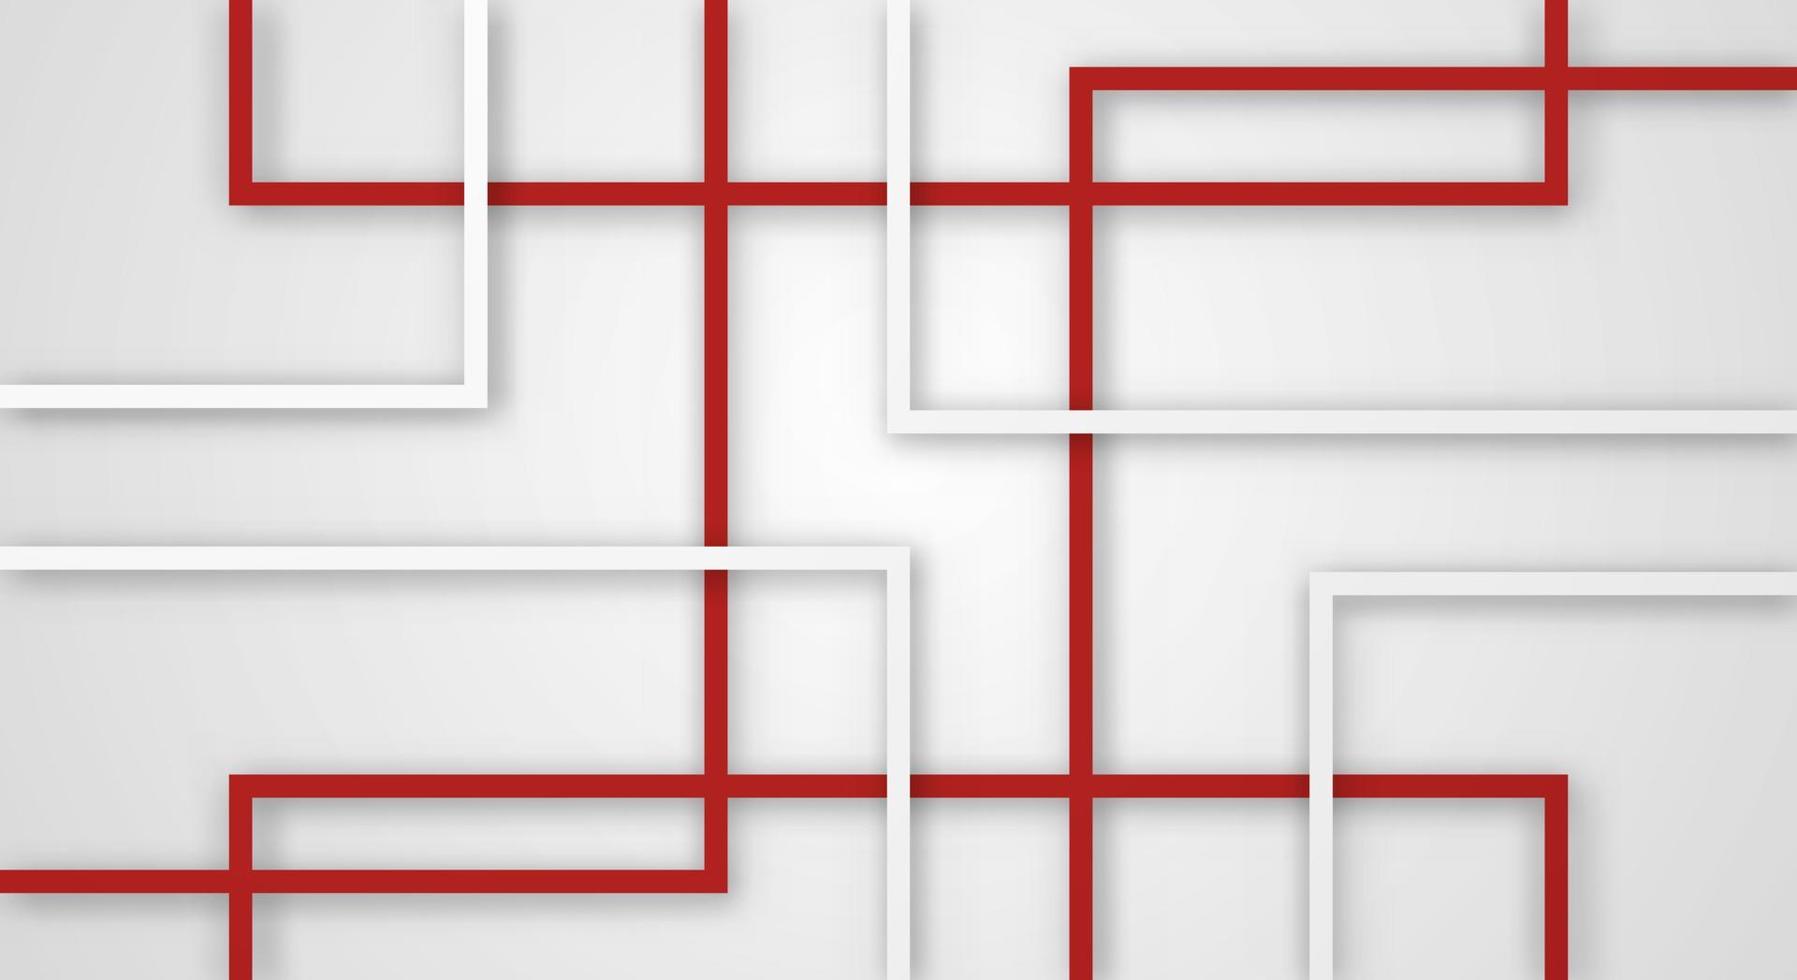 linhas de corte de papel de linhas geométricas quadradas 3d abstratas com padrão de decoração realista de cores vermelhas e brancas vetor